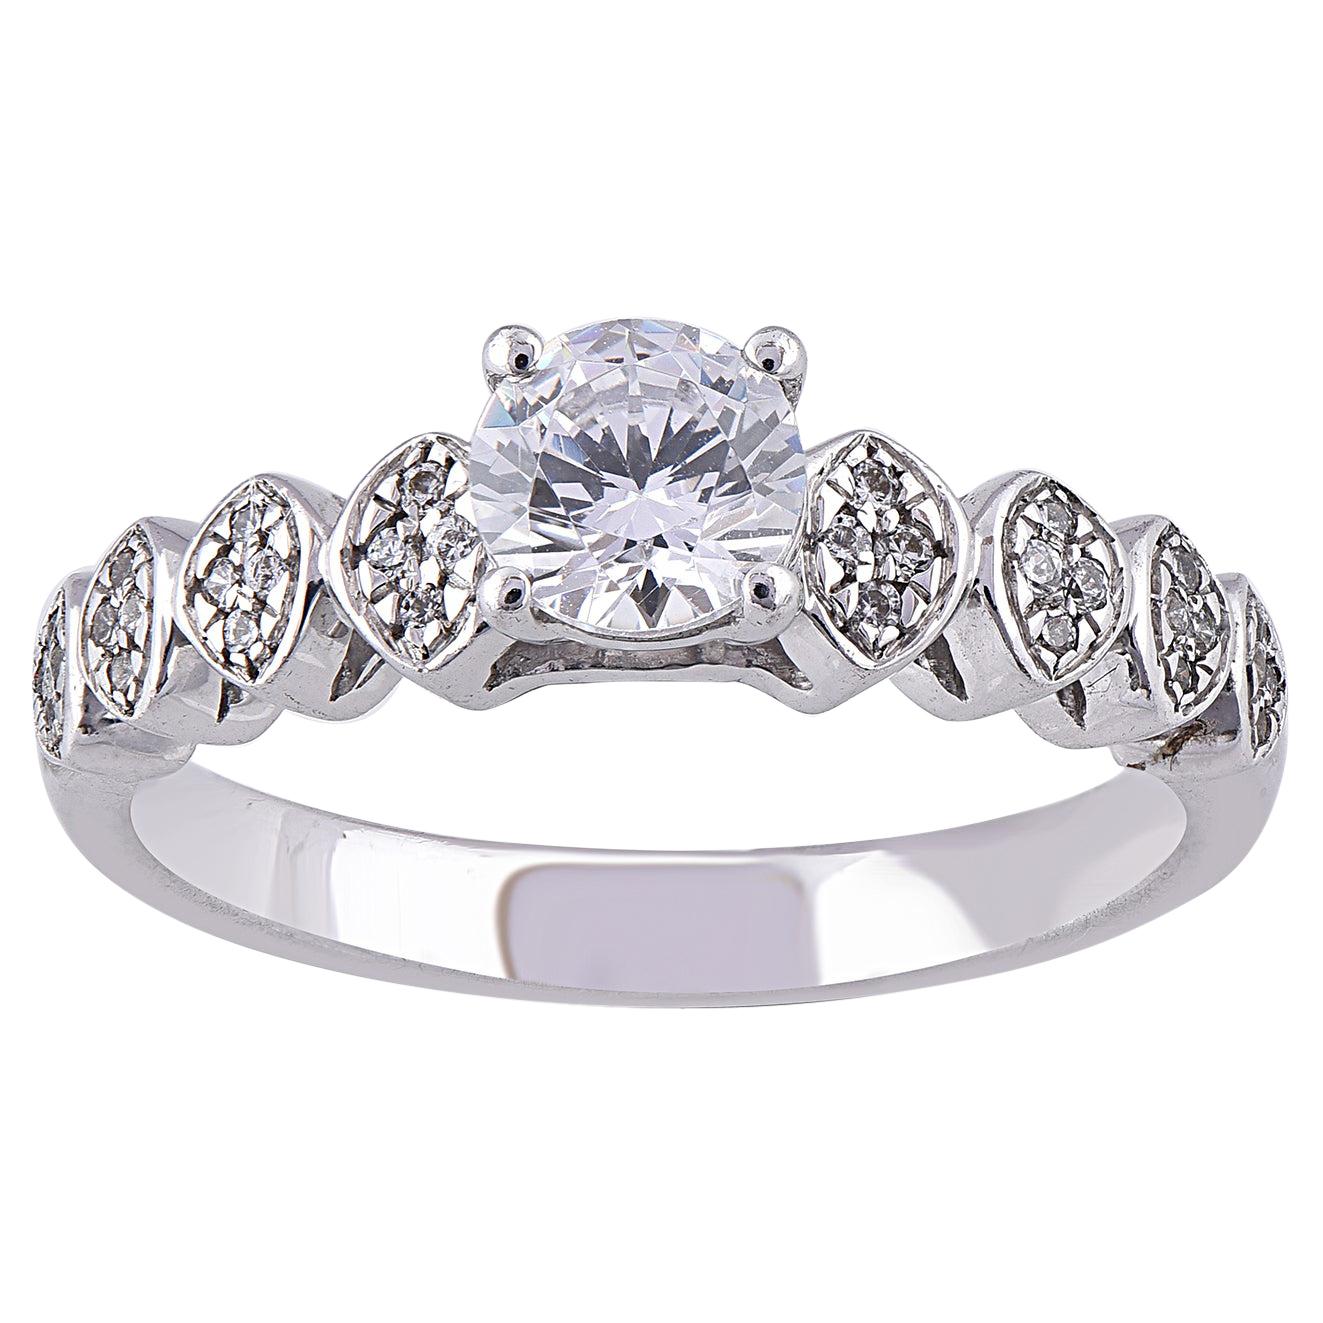 TJD 0.75 Carat Round Diamond 18 Karat White Gold 4 Prong Engagement Ring